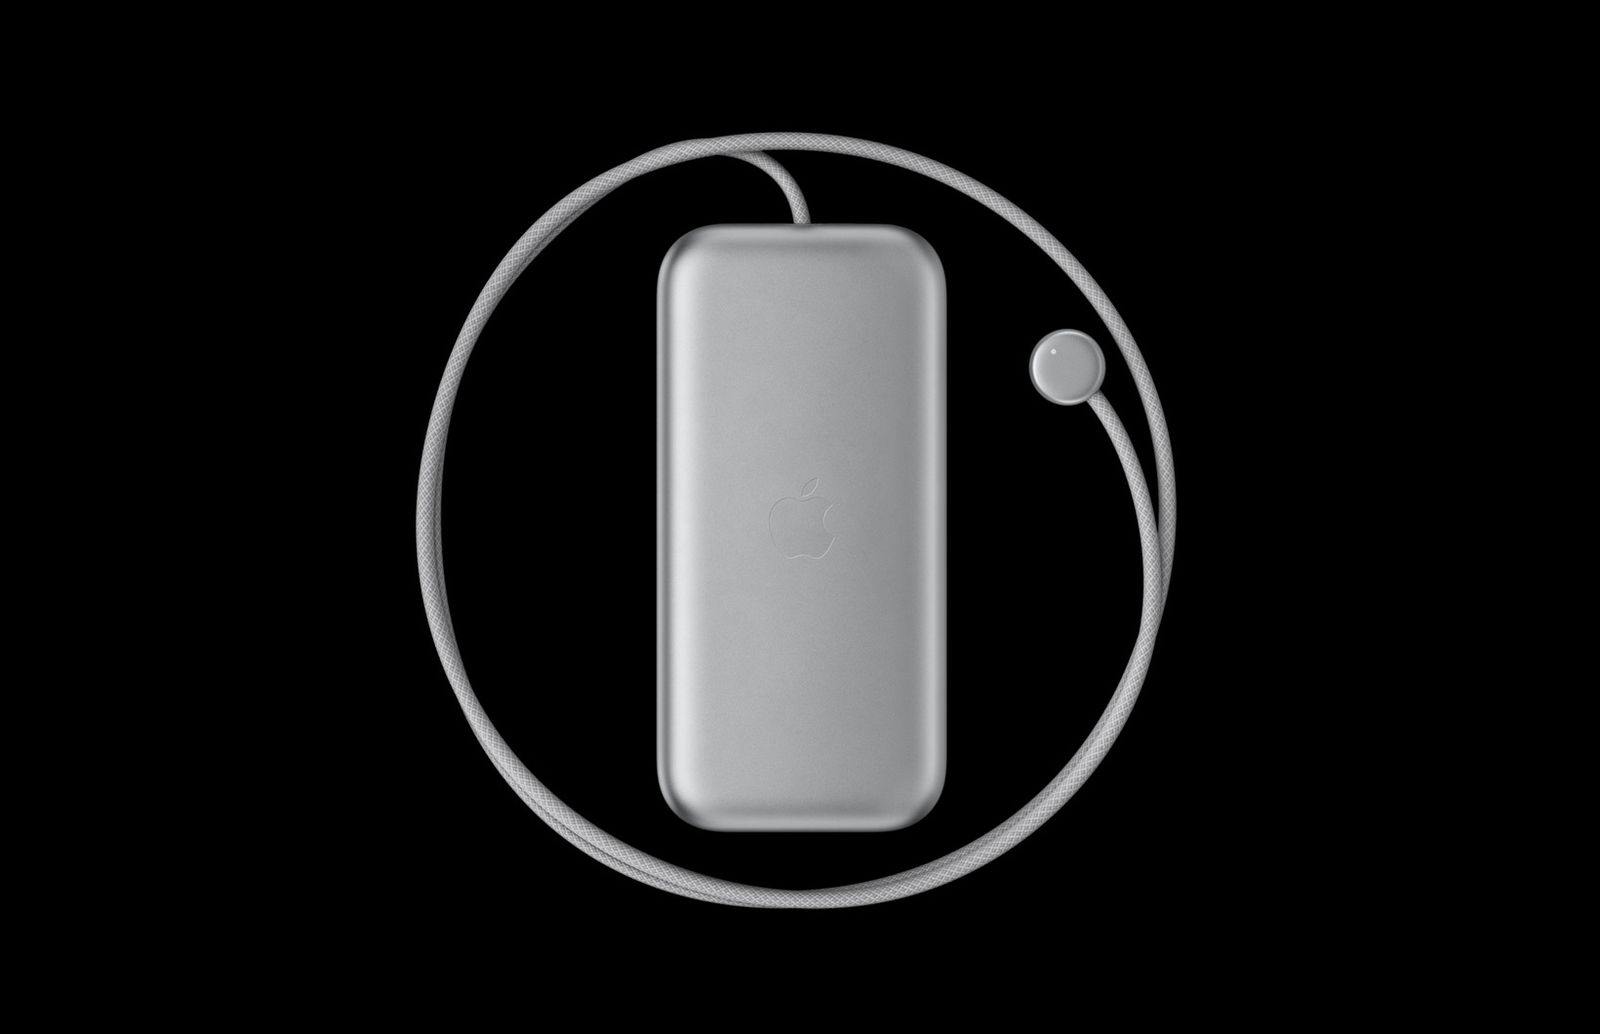 Шлем Apple Vision Pro работает всего лишь 2 с половиной часа от аккумулятора, и это в лучшем случае